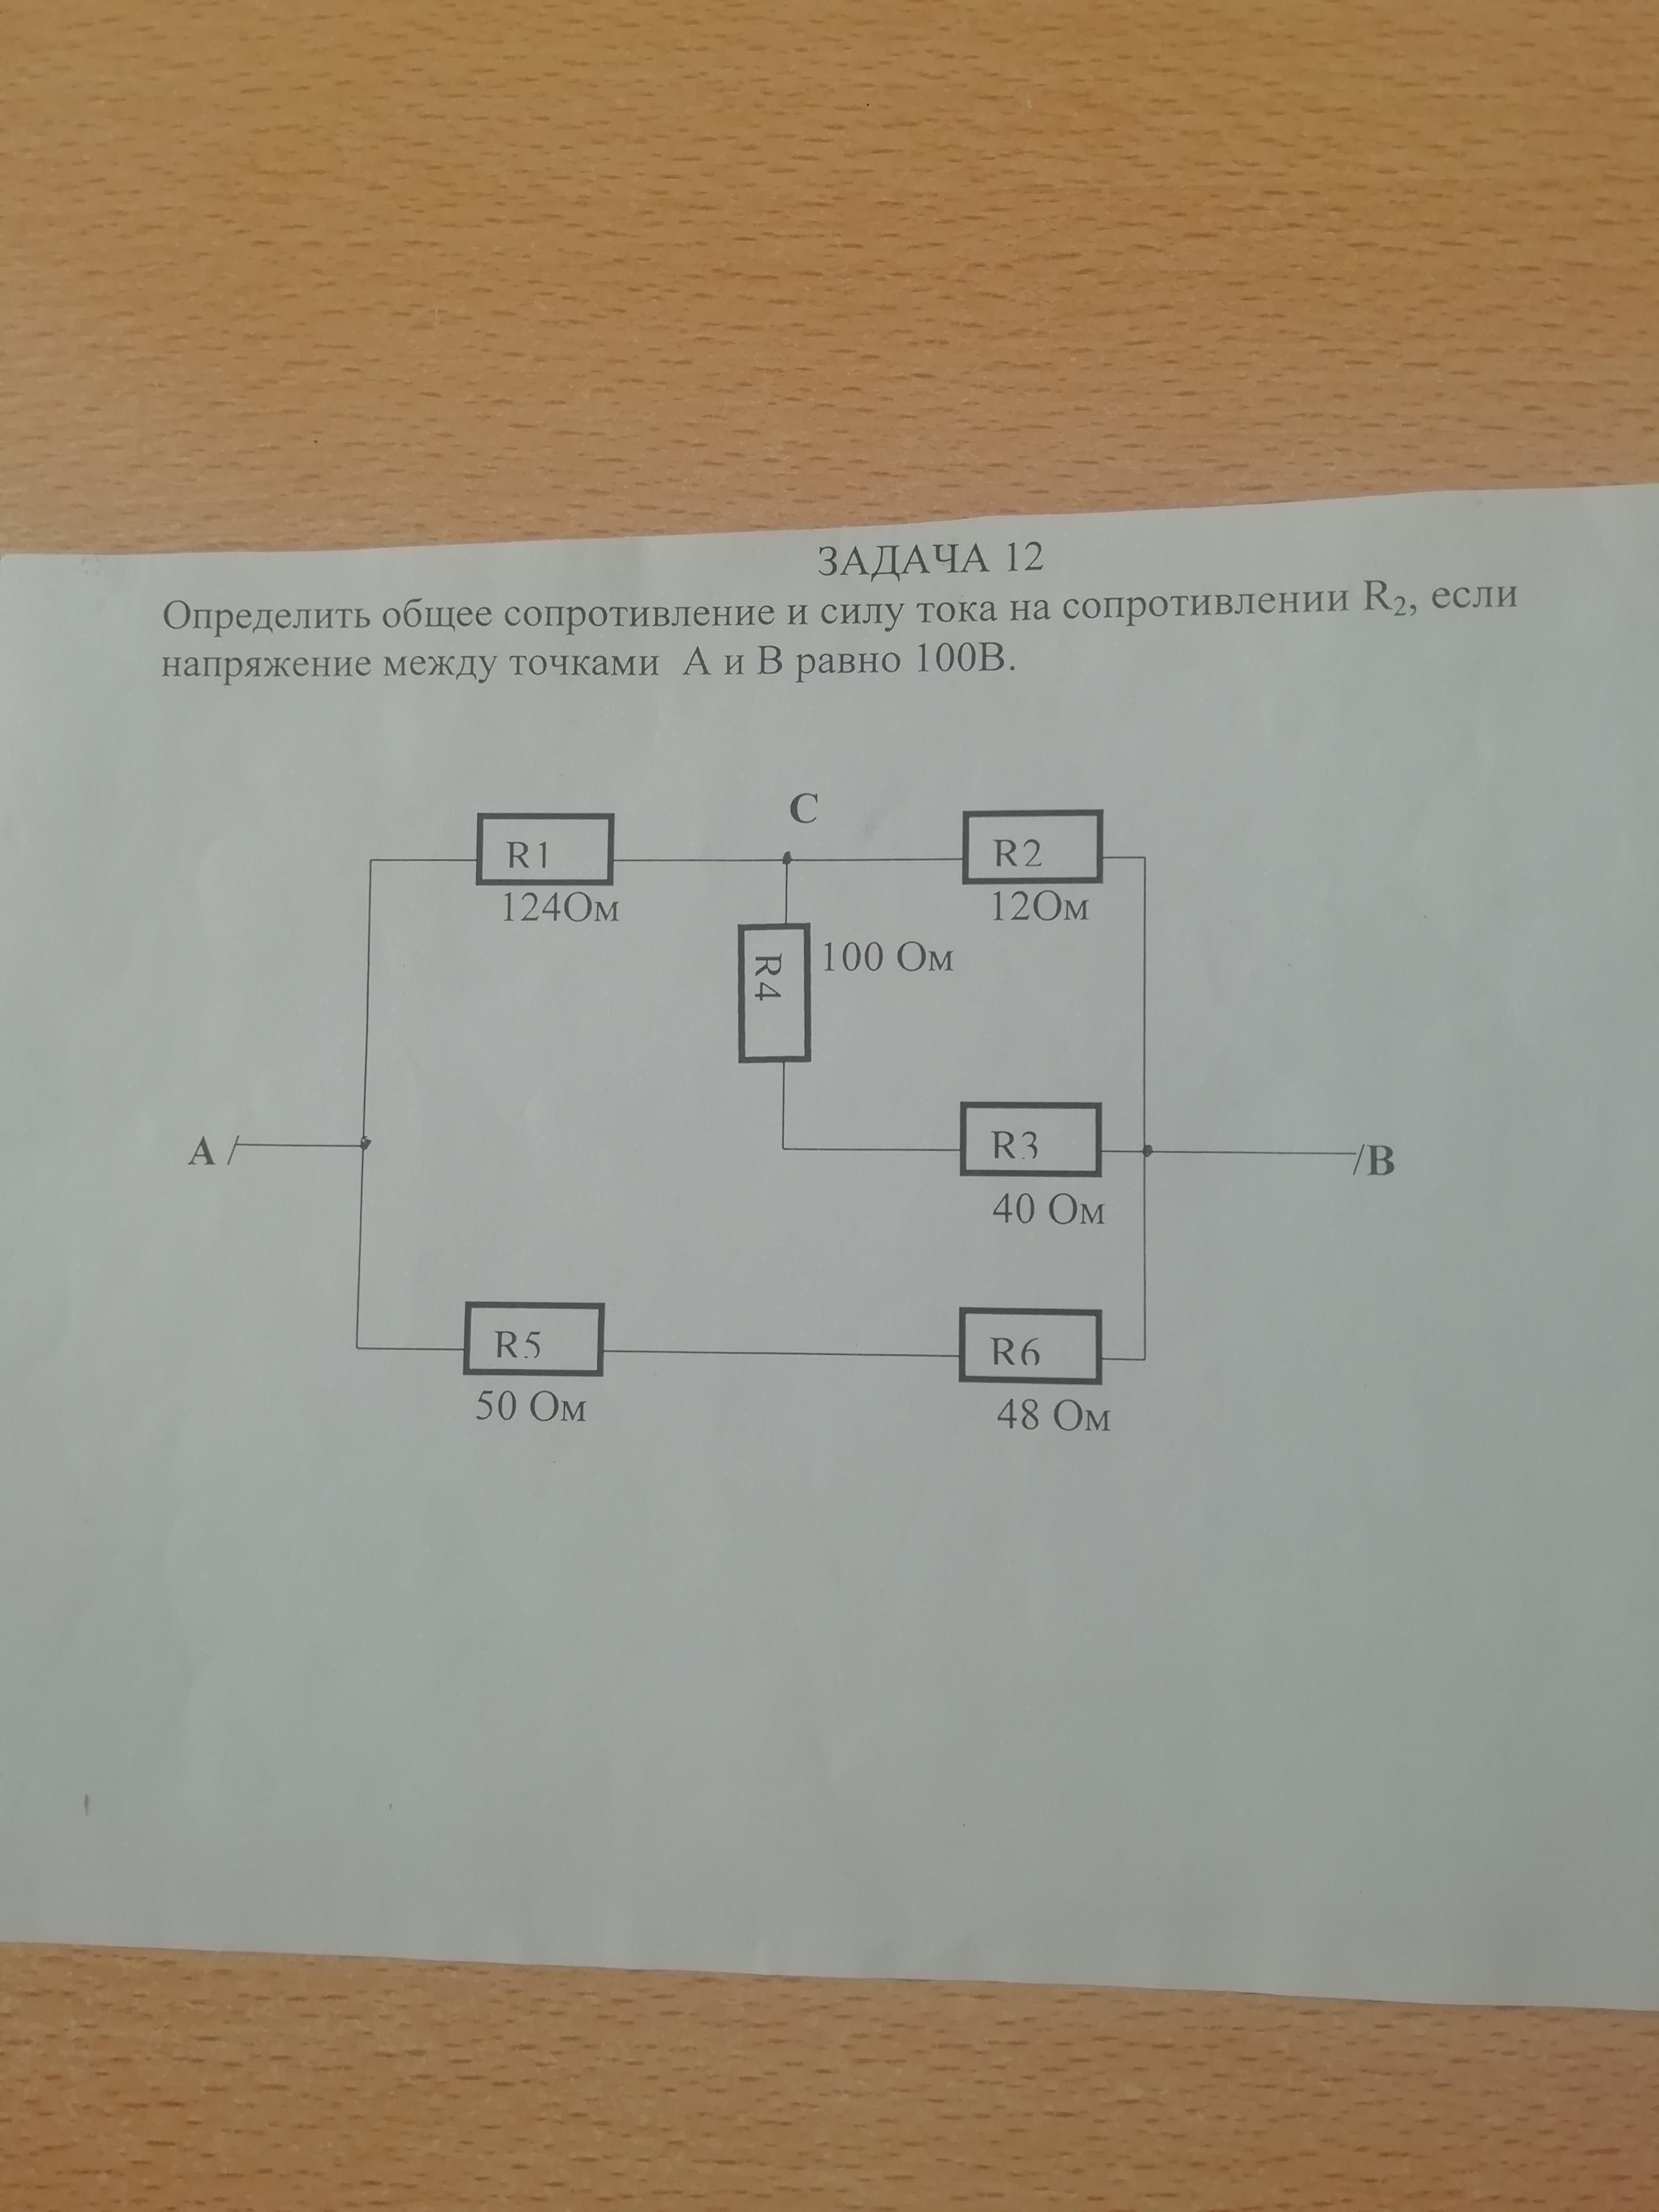 Определите напряжение в резисторе r2